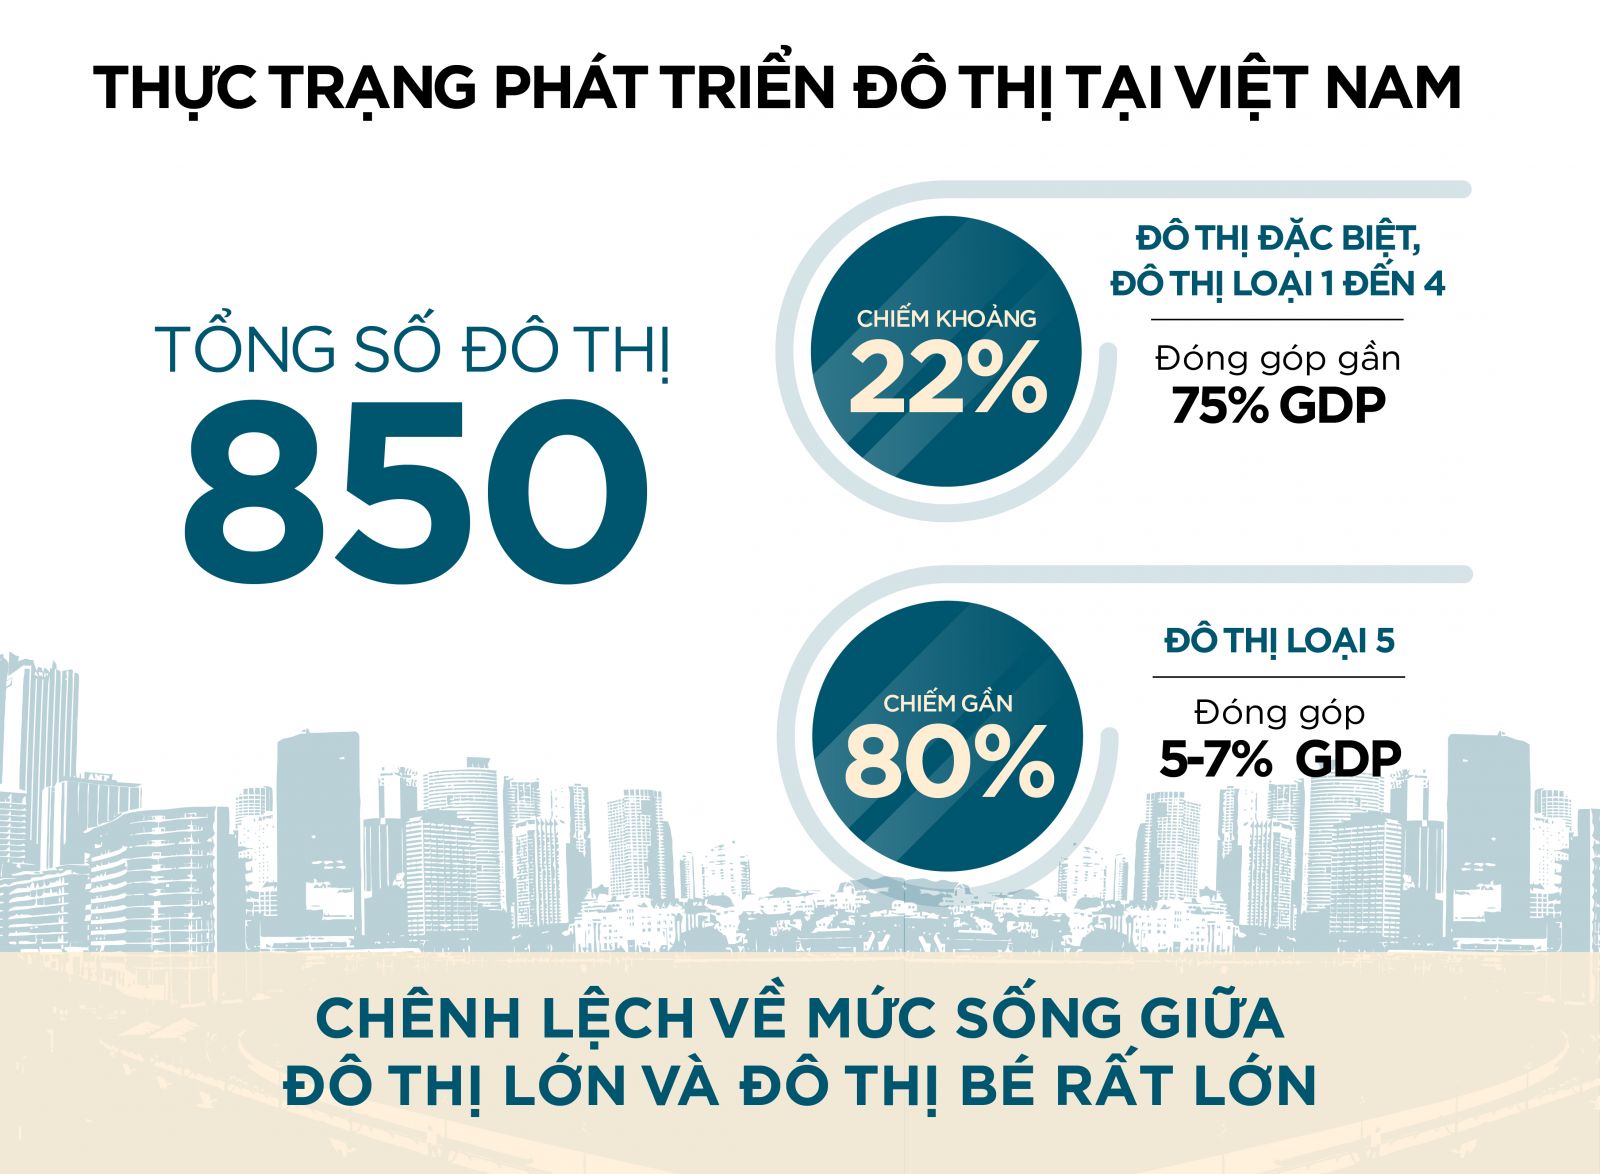 Thực trạng phát triển đô thị tại Việt Nam.